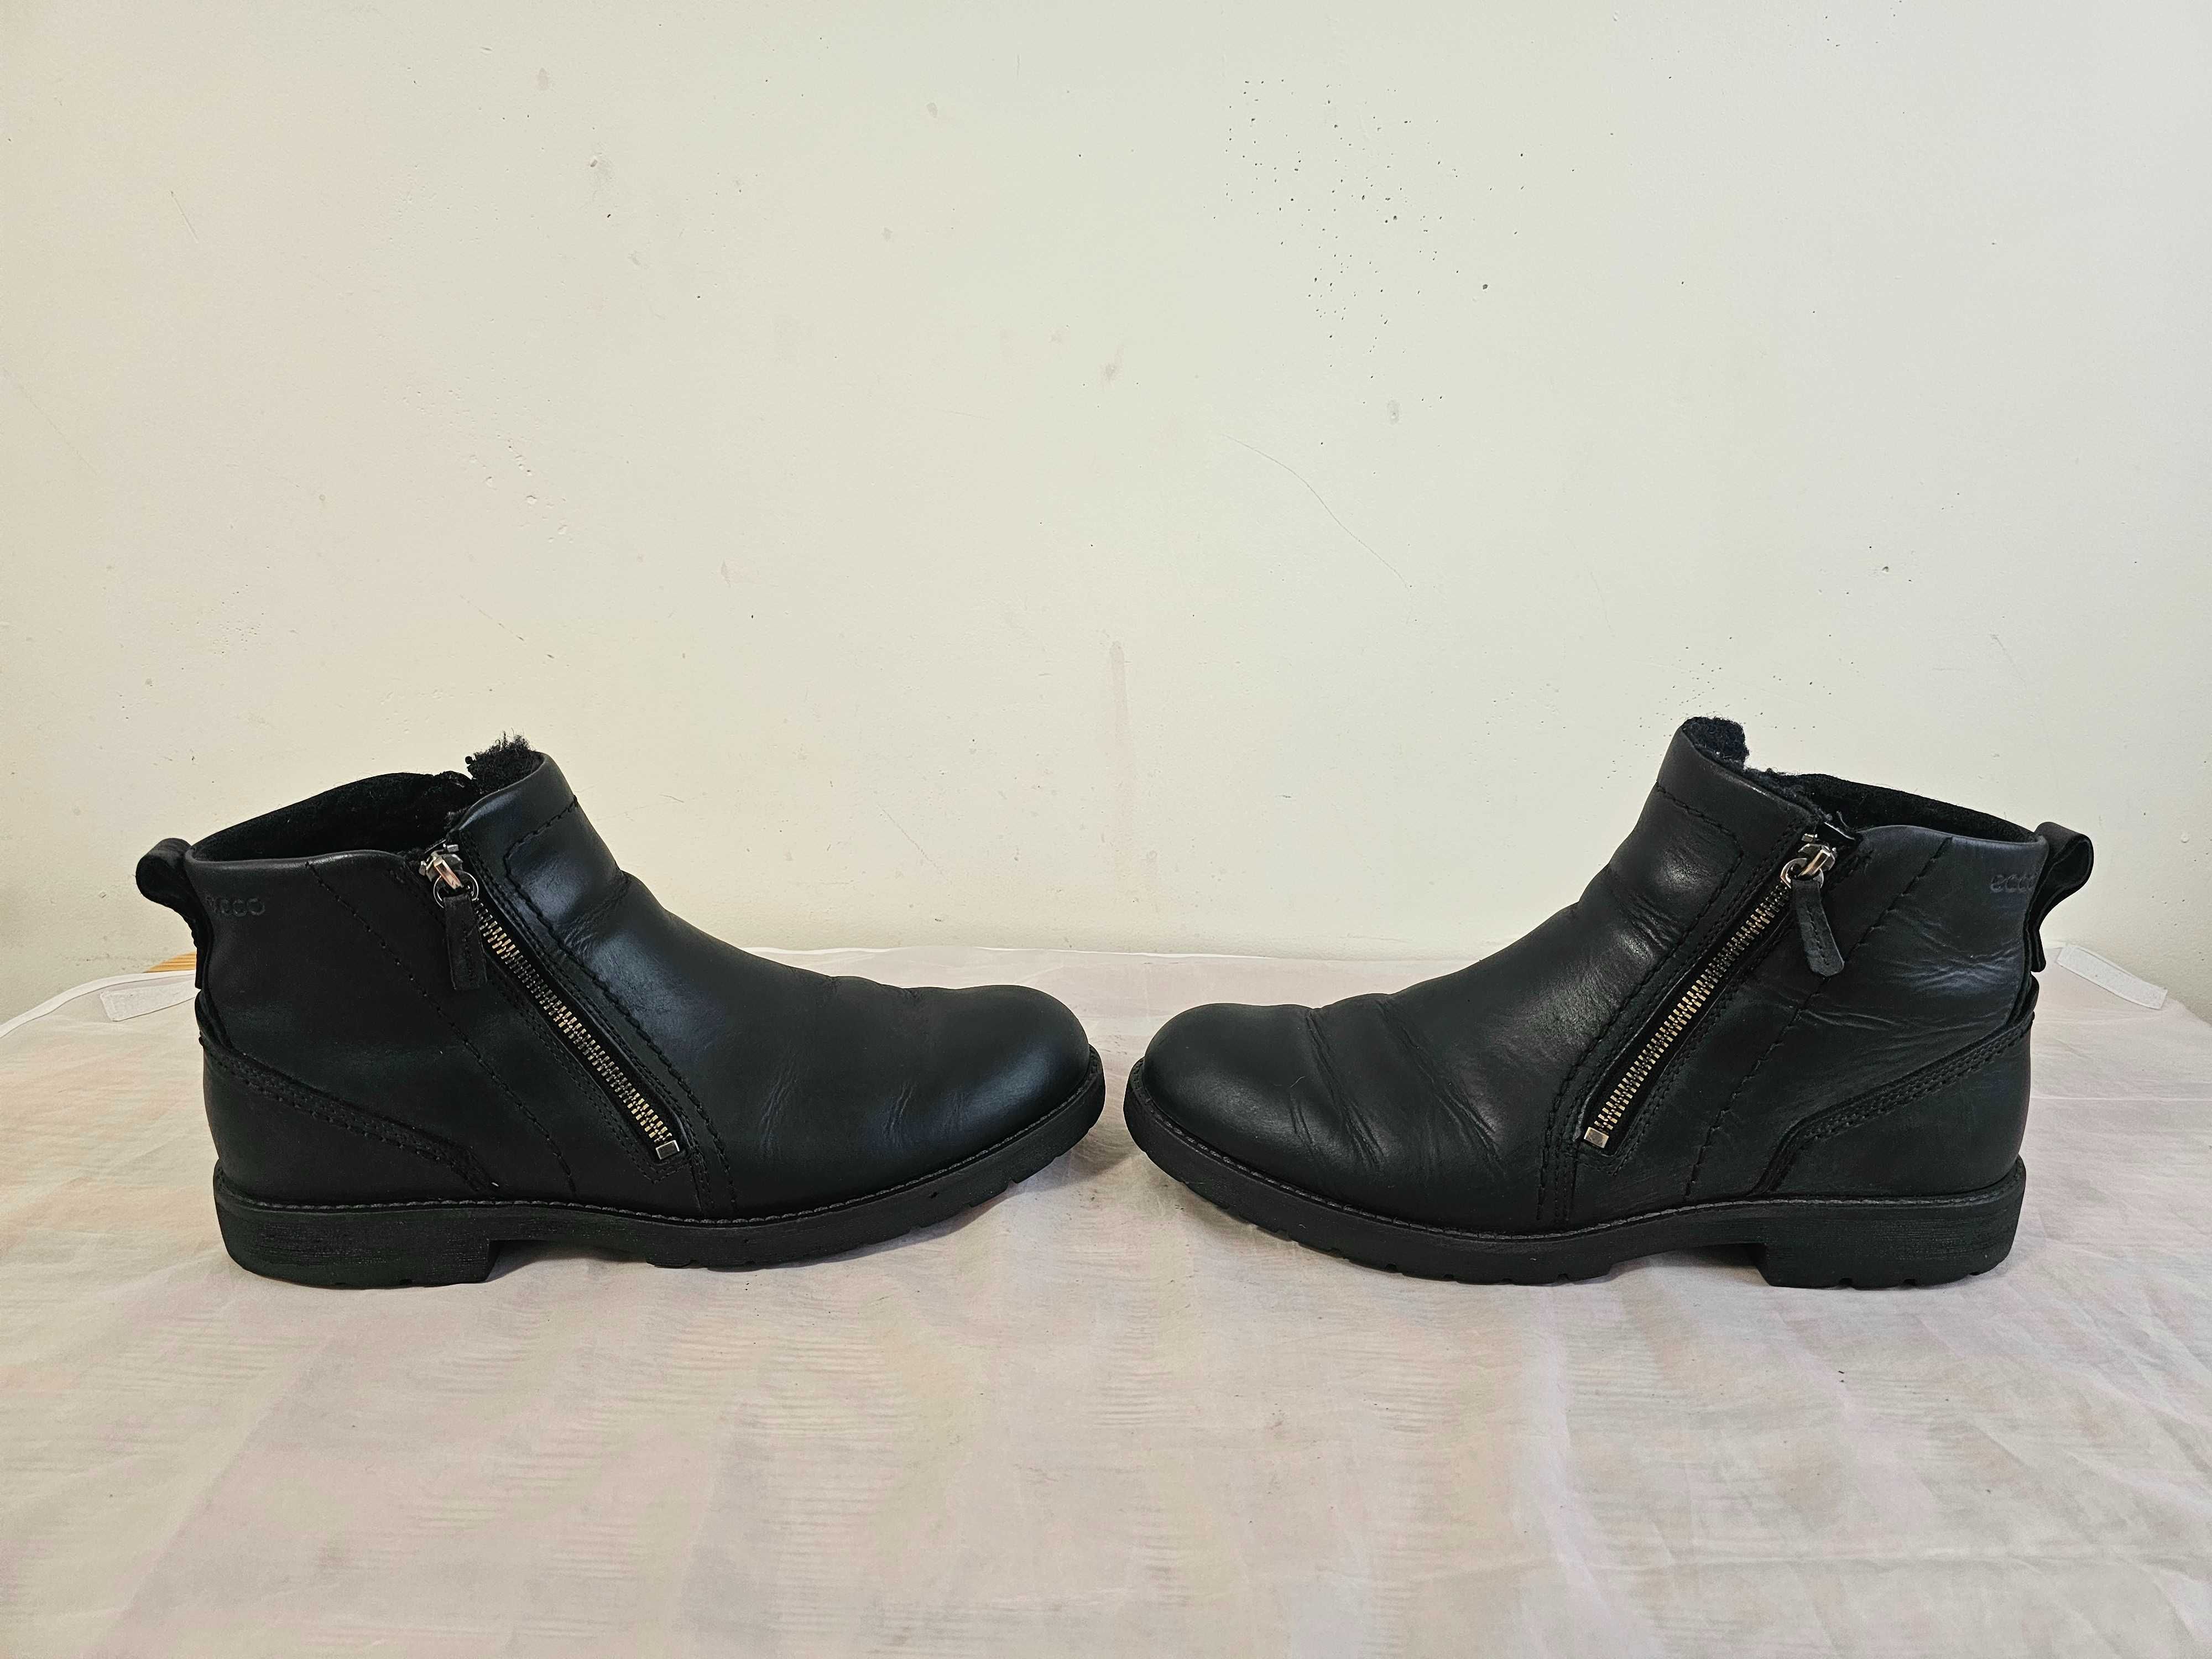 Buty trzewiki męskie ECCO Hydromax rozmiar 44 wkładka 29,5 cm